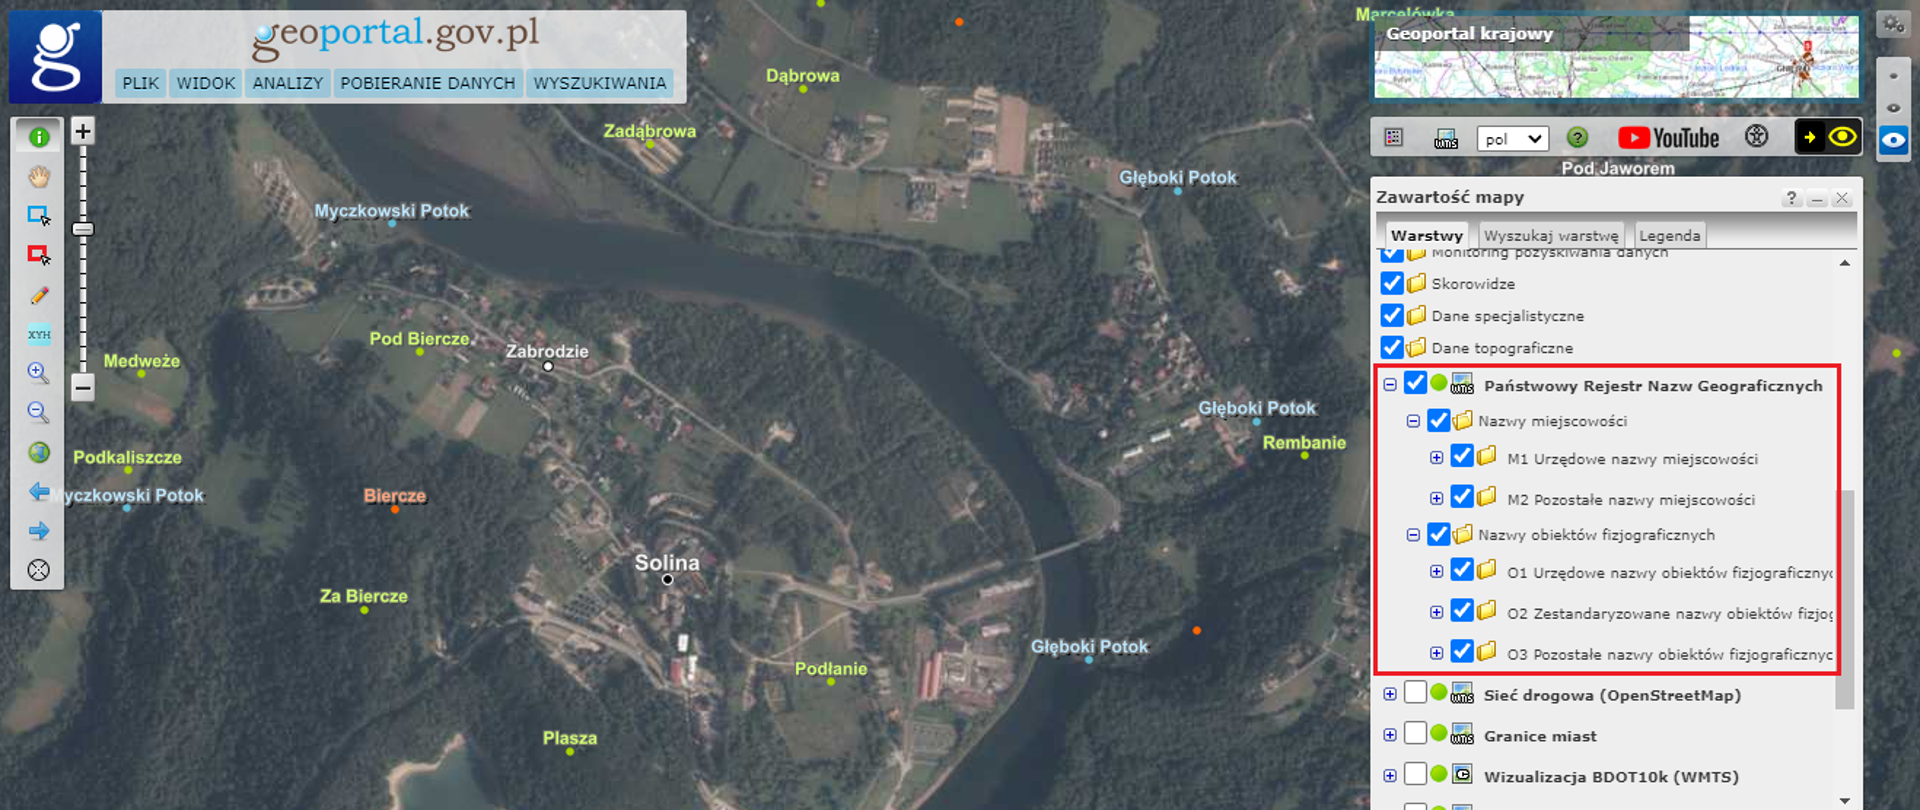 Ilustracja przedstawia zrzut ekranu z serwisu www.geoportal.gov.pl z fragmentem ortofotomapy oraz nazwami obiektów geograficznych okolic miejscowości Solina w postaci usługi przeglądania WMS. Po prawej stronie ilustracji, znajduje się okno zawartości mapy - usługa przeglądania WMS danych PRNG jest zaznaczona czerwonym prostokątem. 